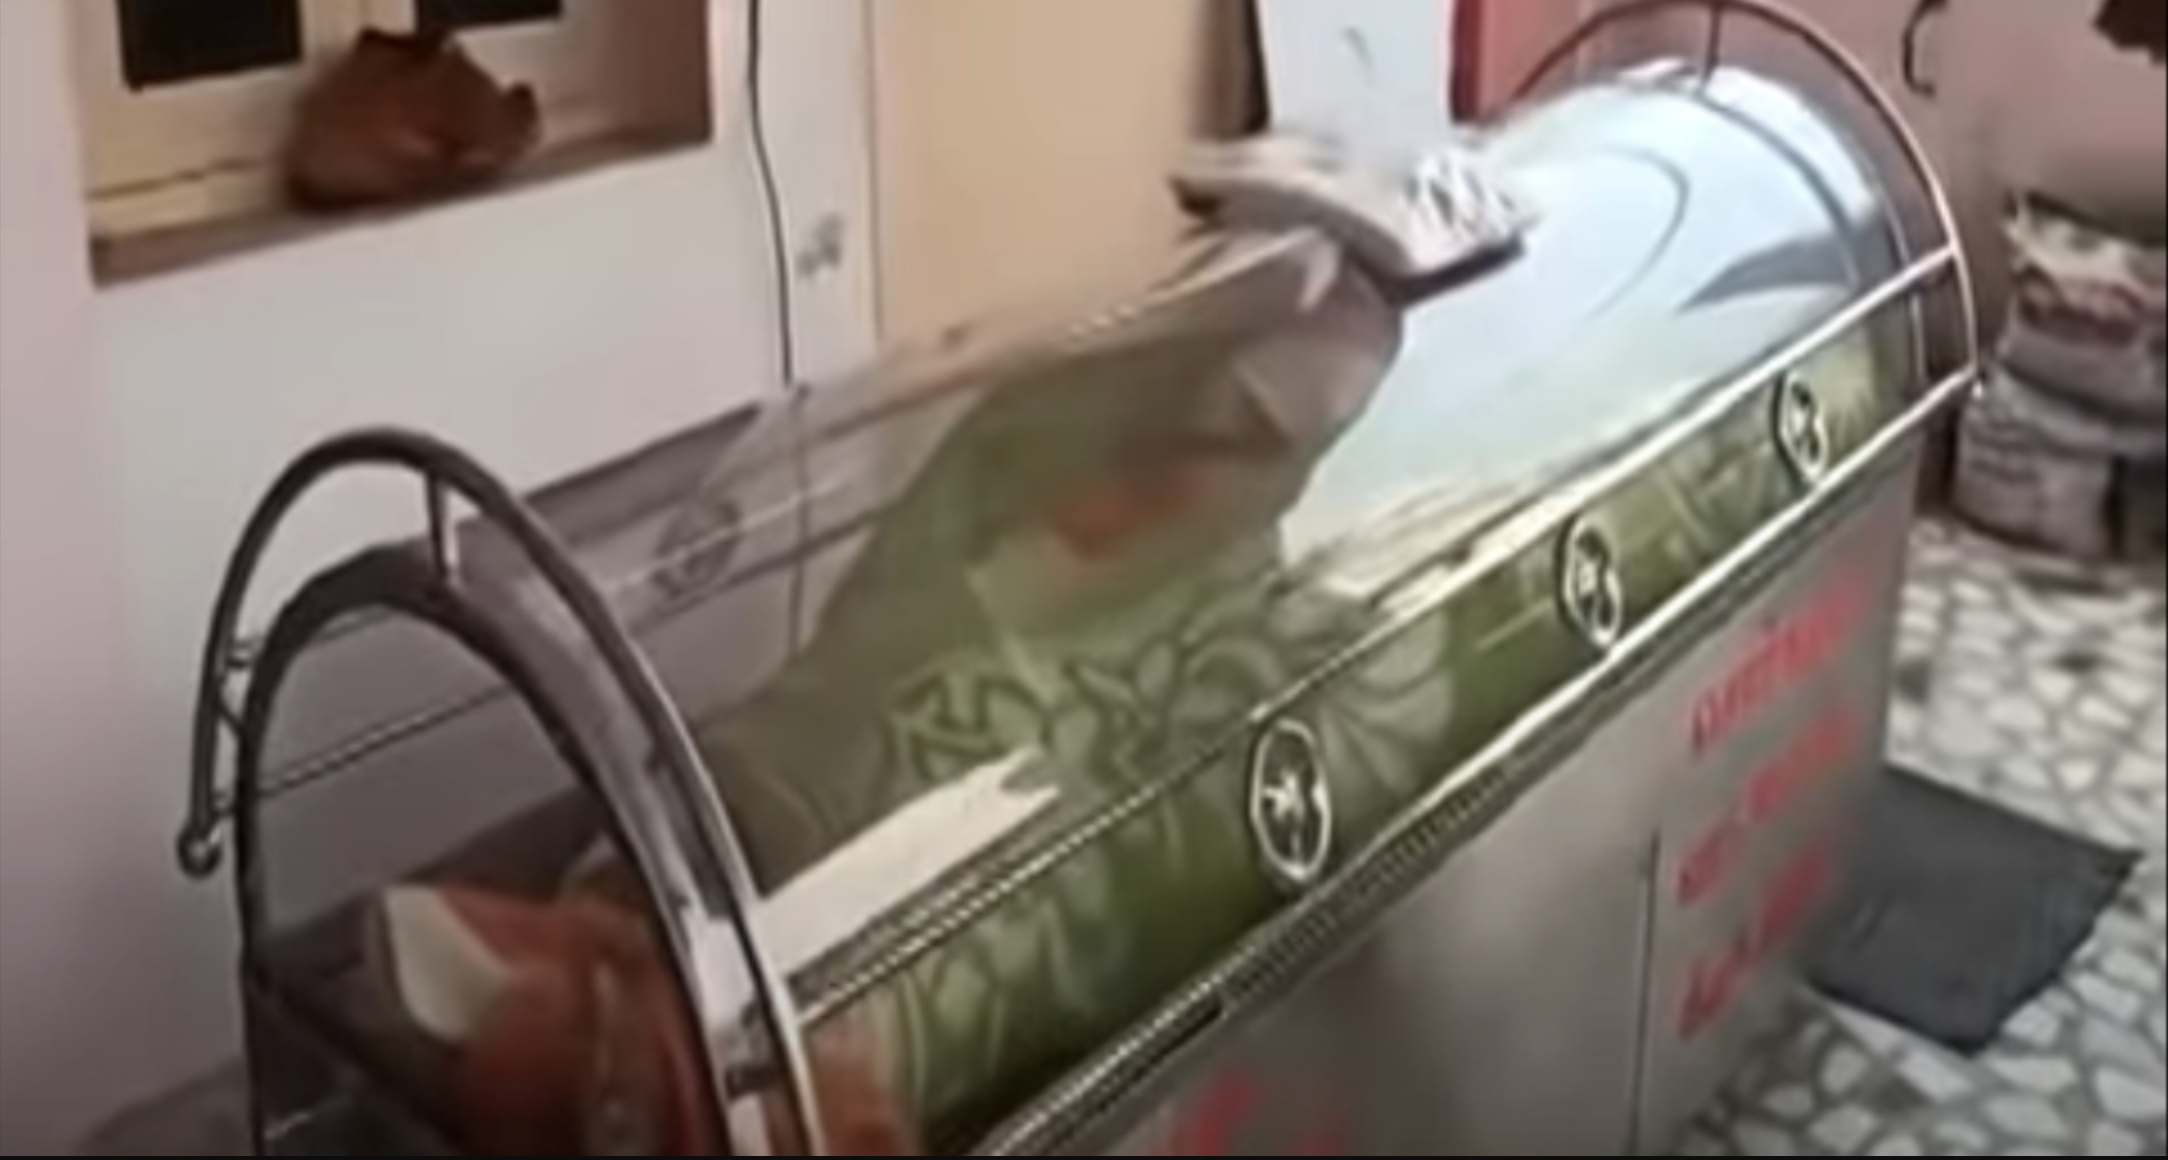 OLOV: Video muestra a un hombre despertar dentro de un congelador luego de ser declarado muerto